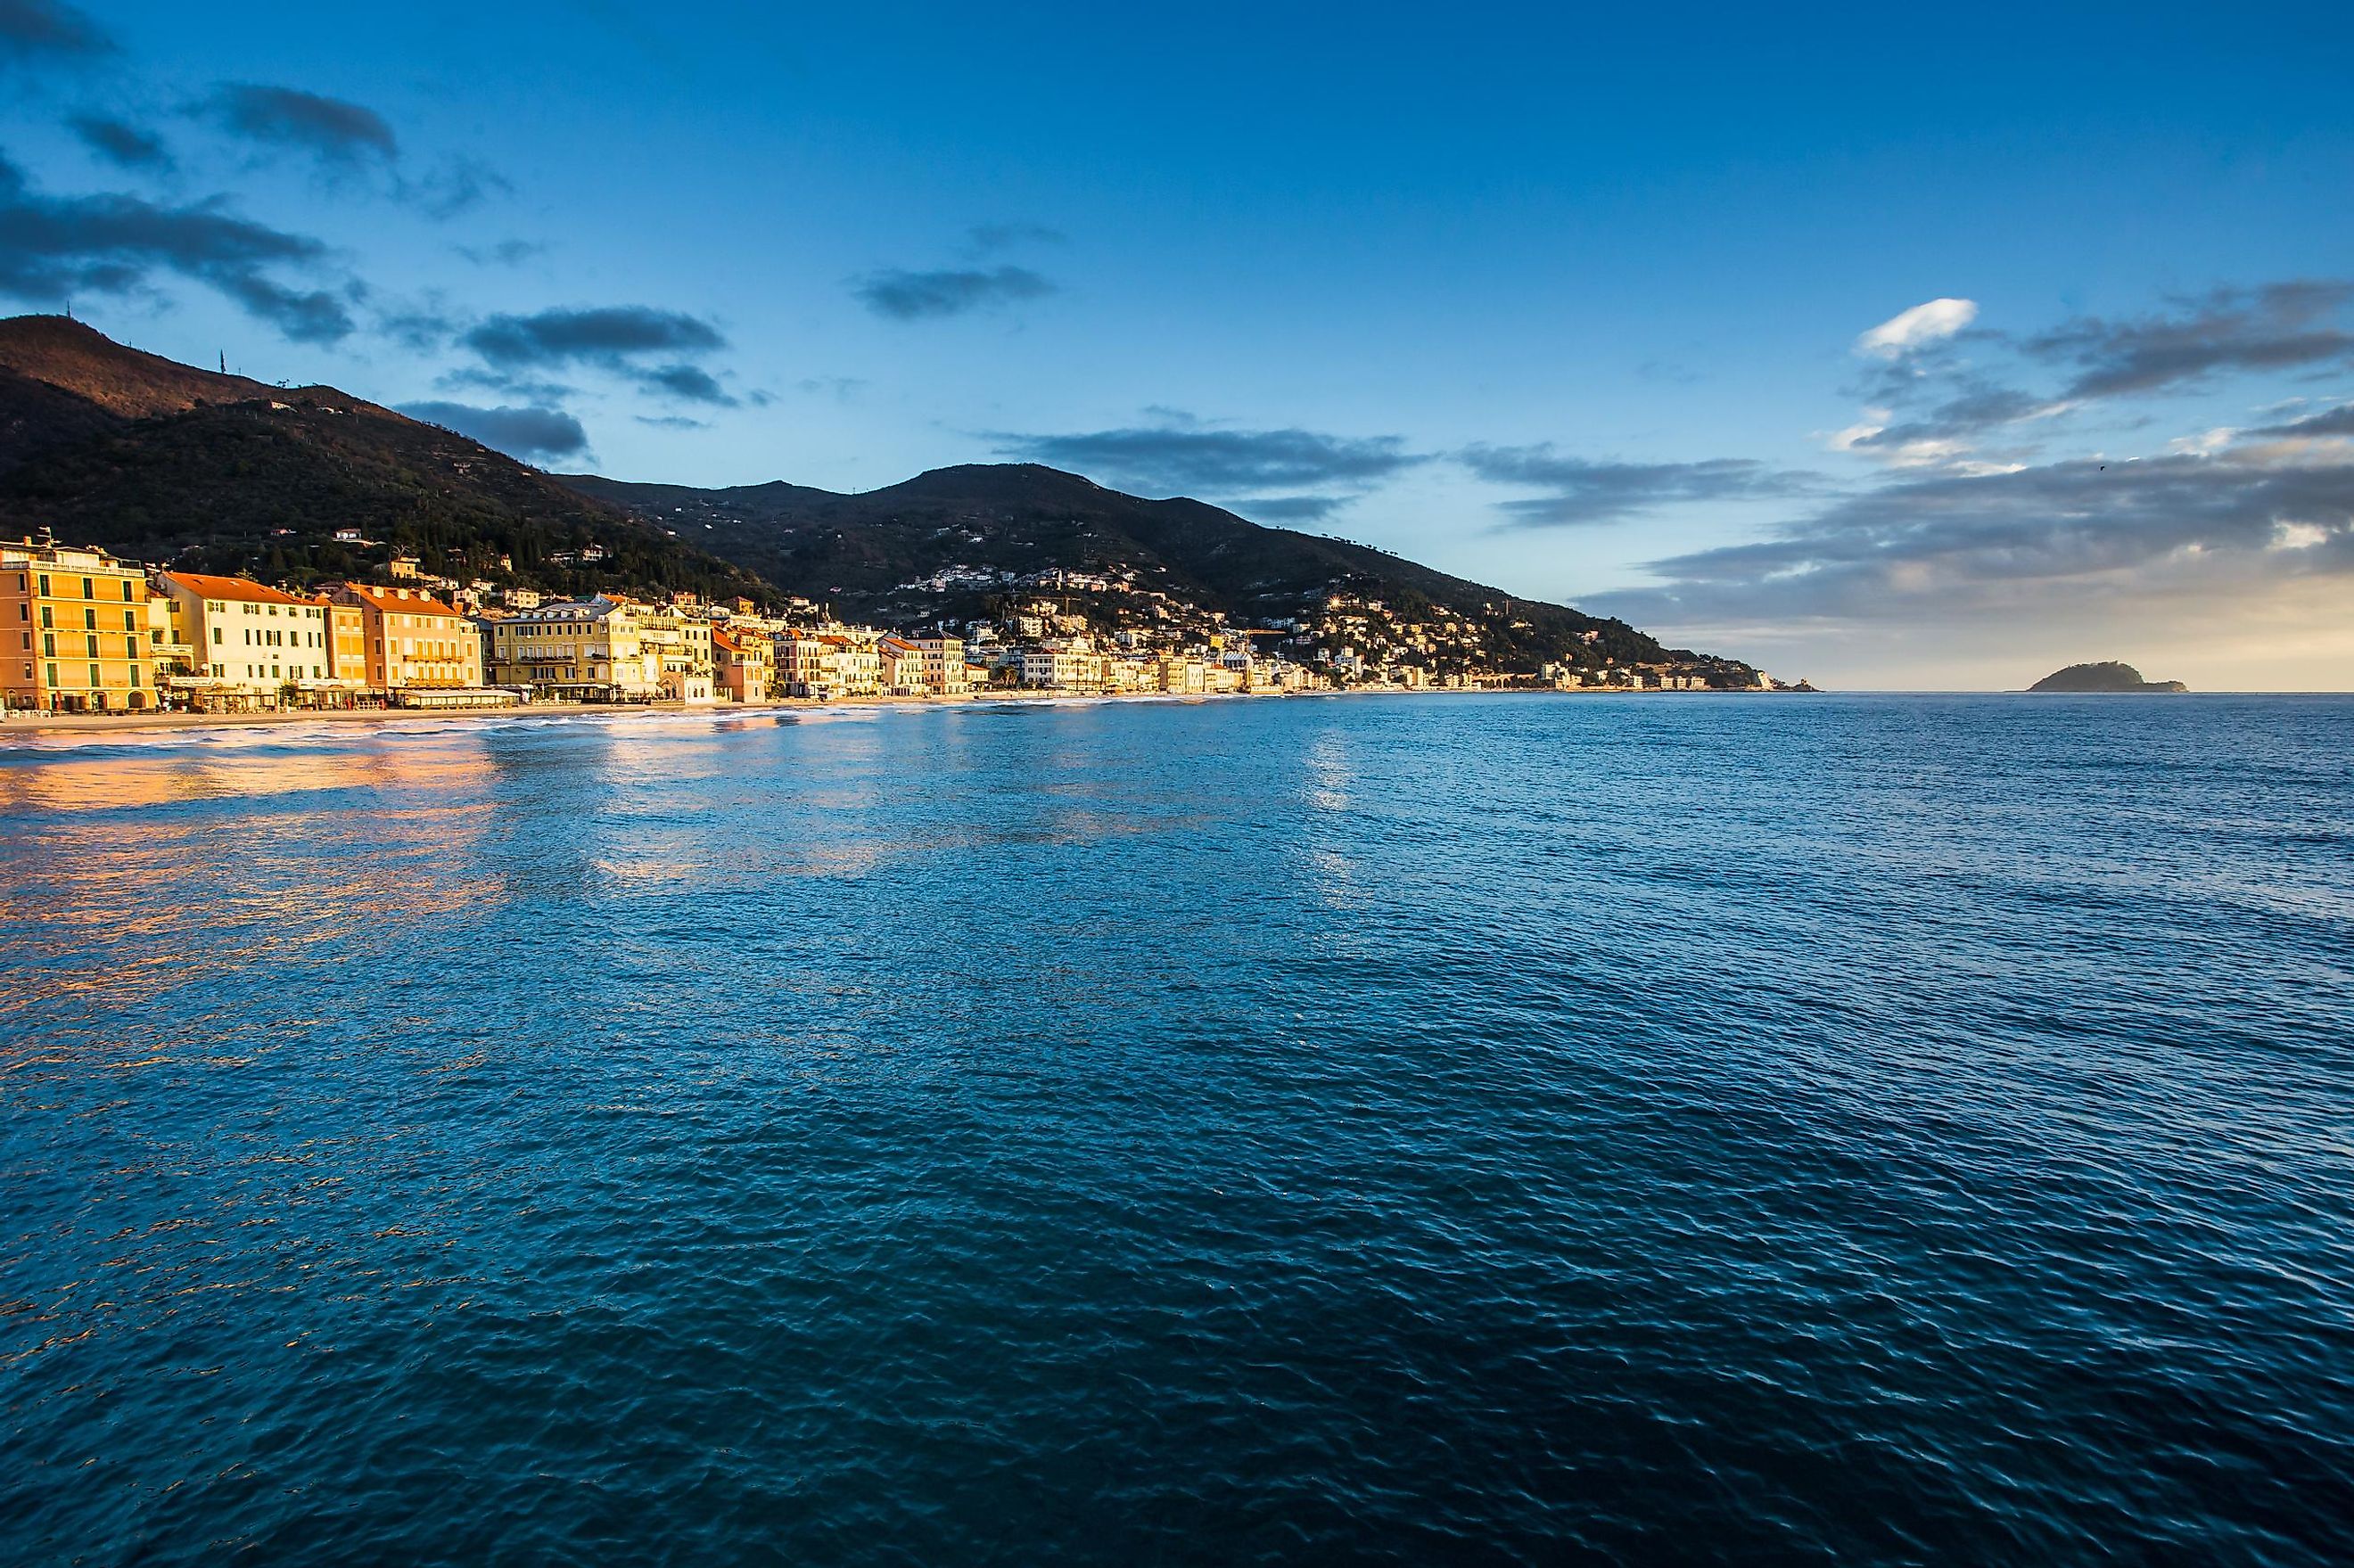 Alassia town on the Ligurian Sea coast.